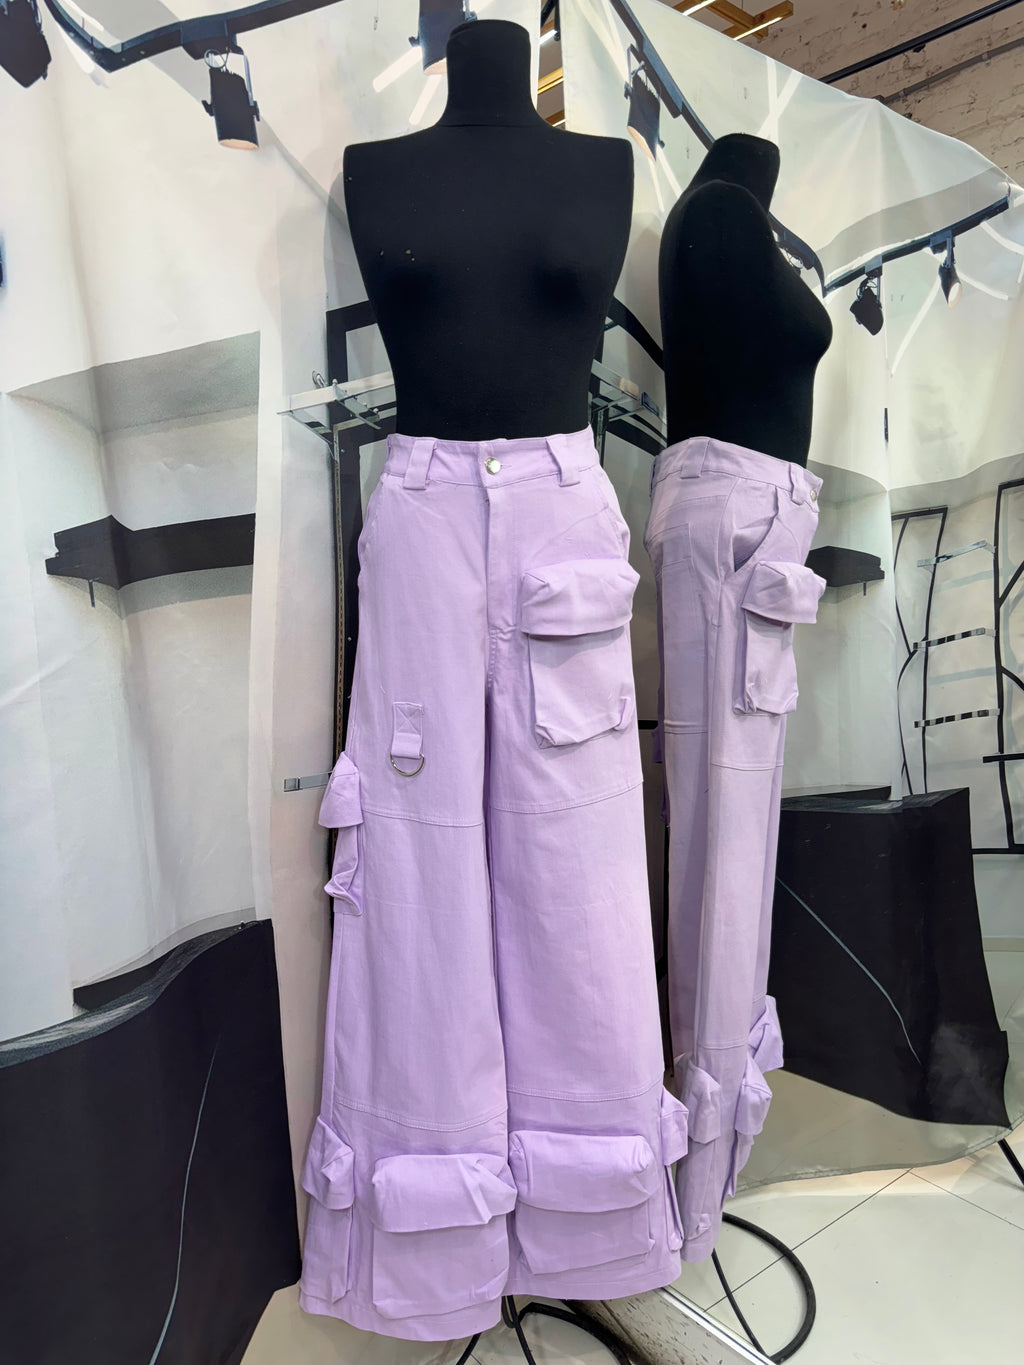 Pantalon lila bolsas cargo al costado y en tobilleras